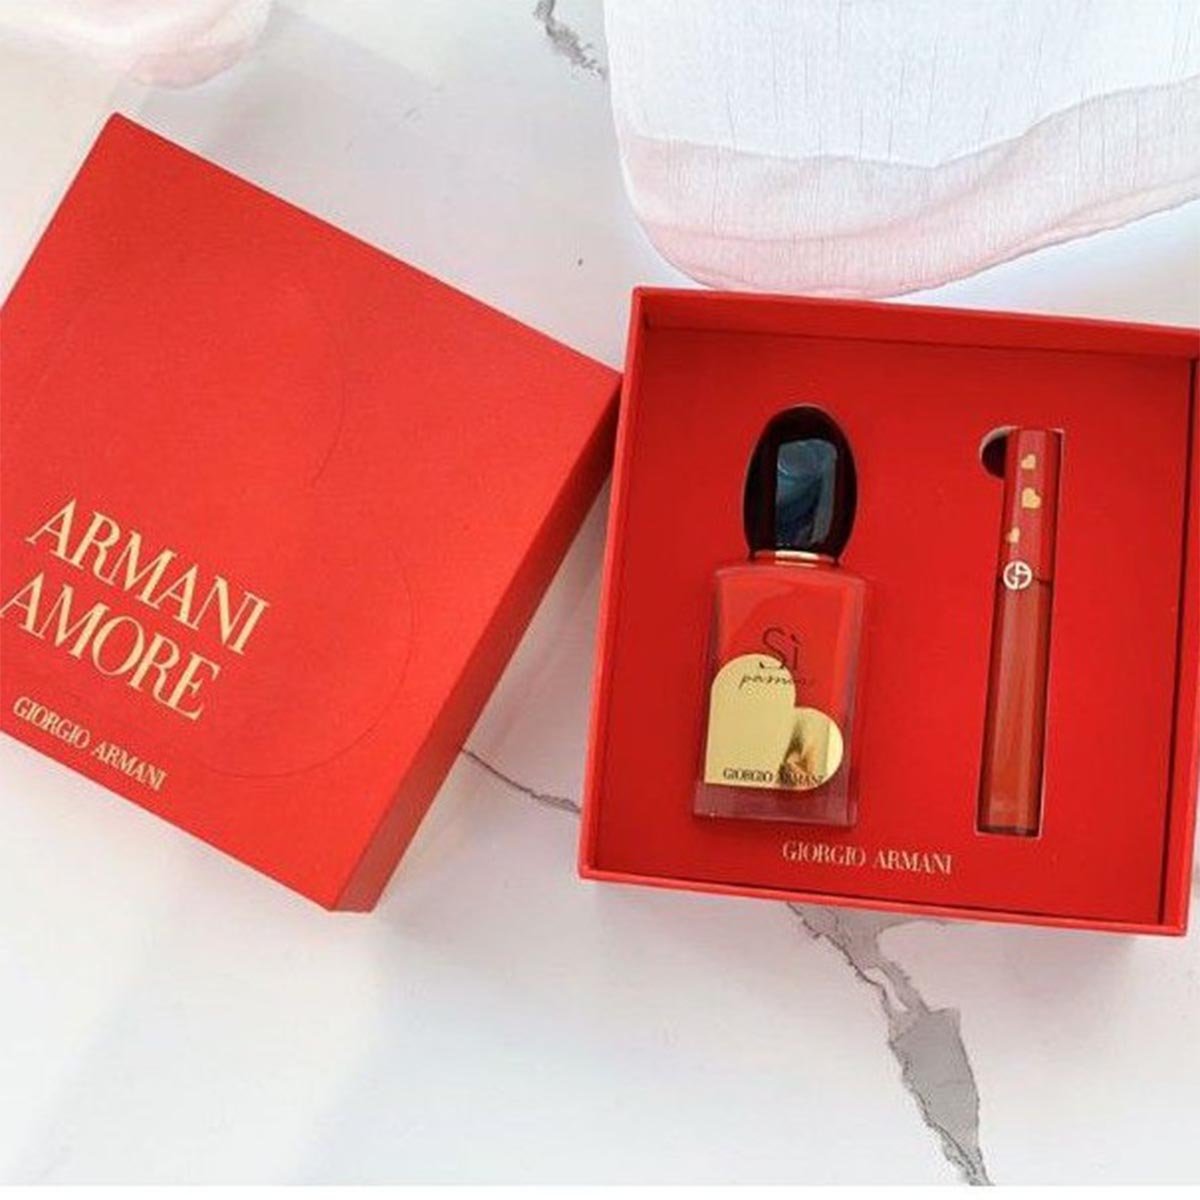 Giorgio Armani Si Passione Lipstick Set - My Perfume Shop Australia